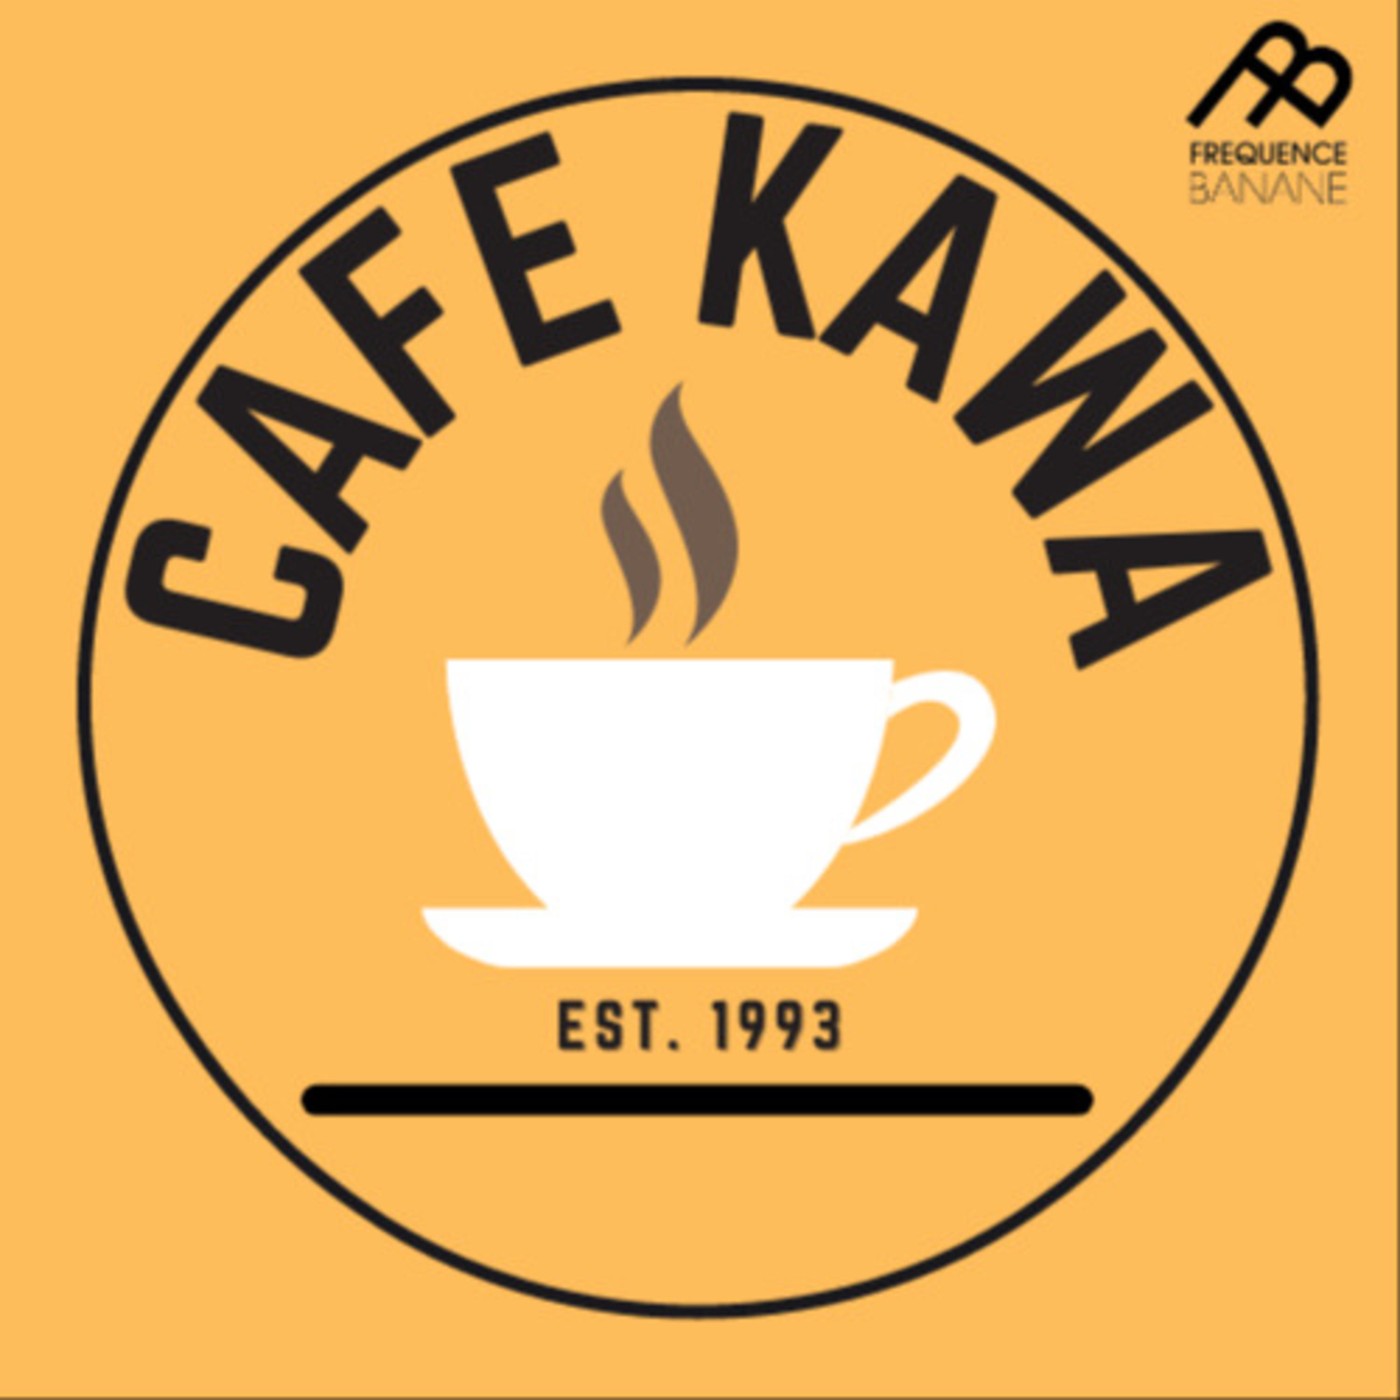 CaféKawa du 02/03/20 - Voix 5 3/4 